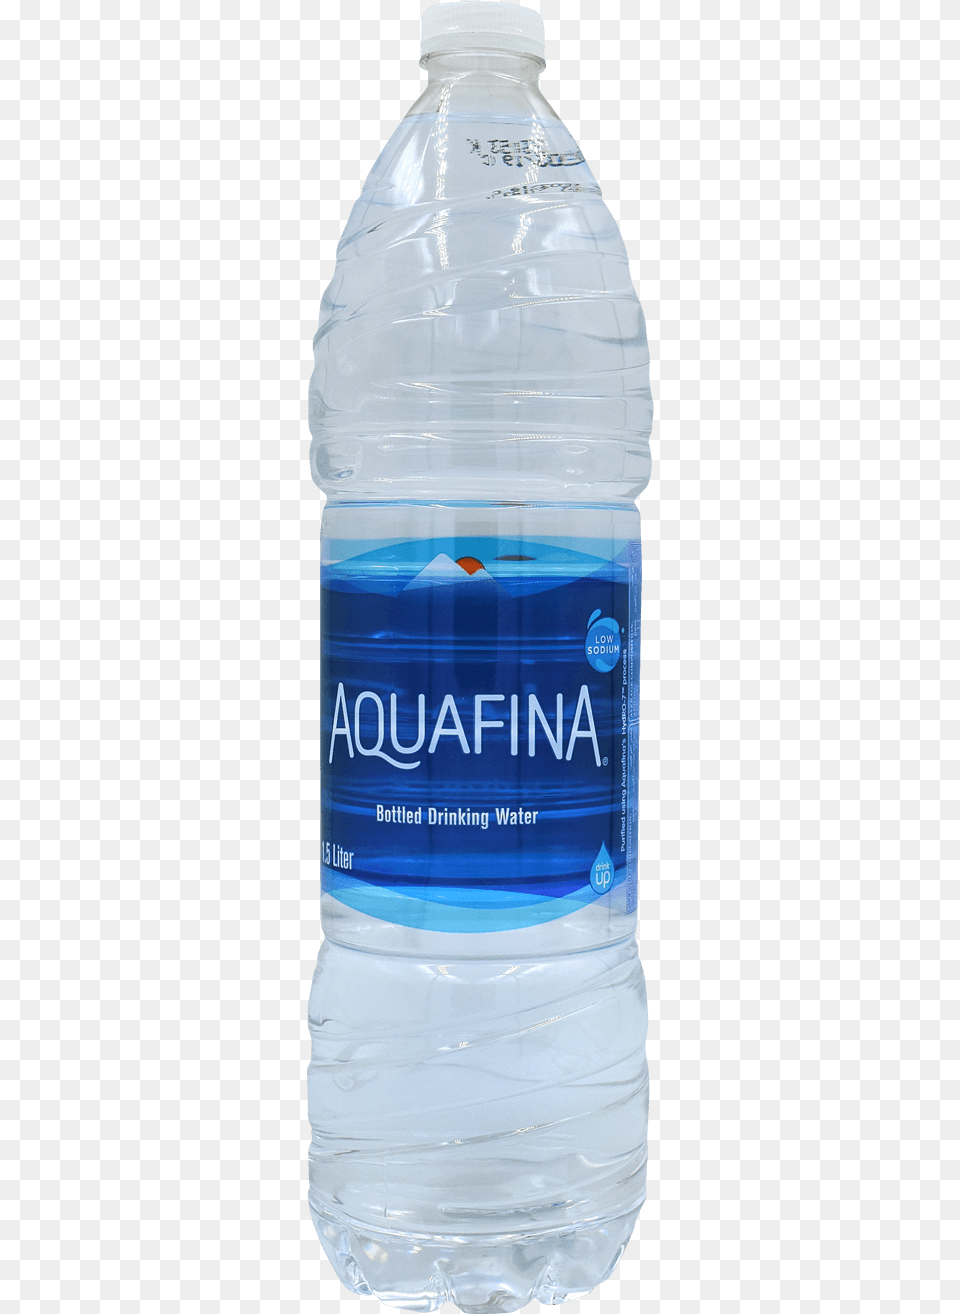 Aquafina Water Bottle, Beverage, Mineral Water, Water Bottle Png Image